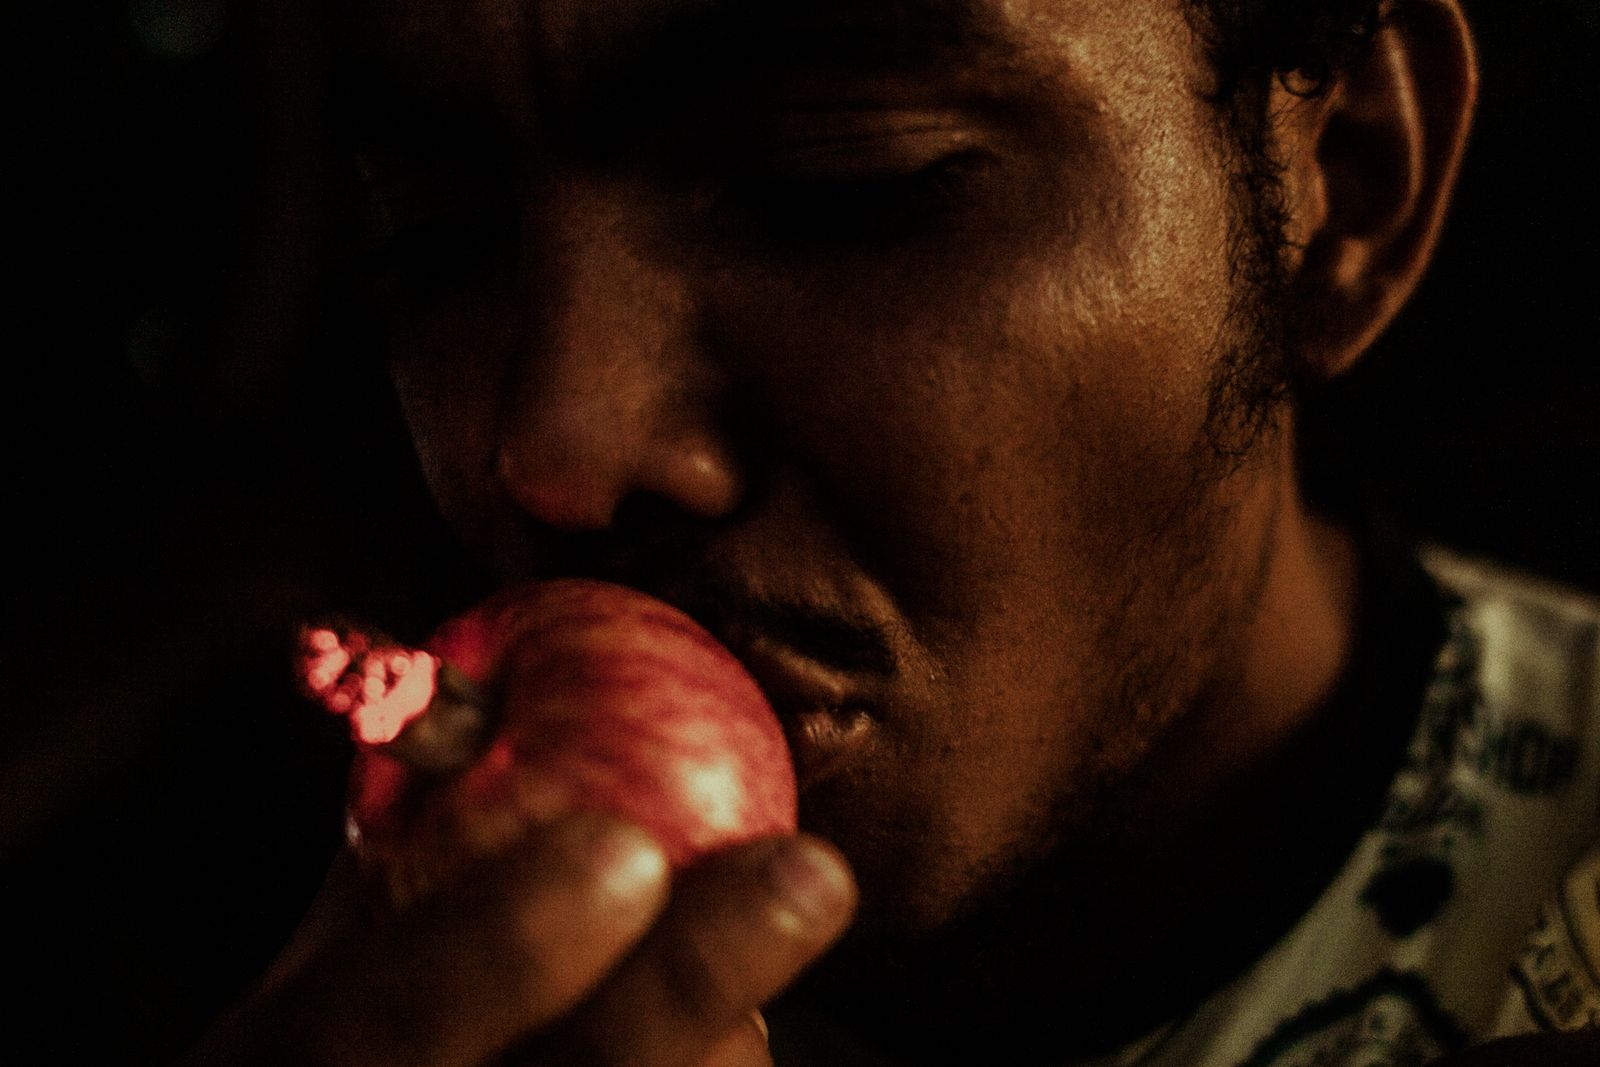 © Celine Croze - Drug dealer smoking crack in an apple to get more high. Sobradinho, Brazil, 2019